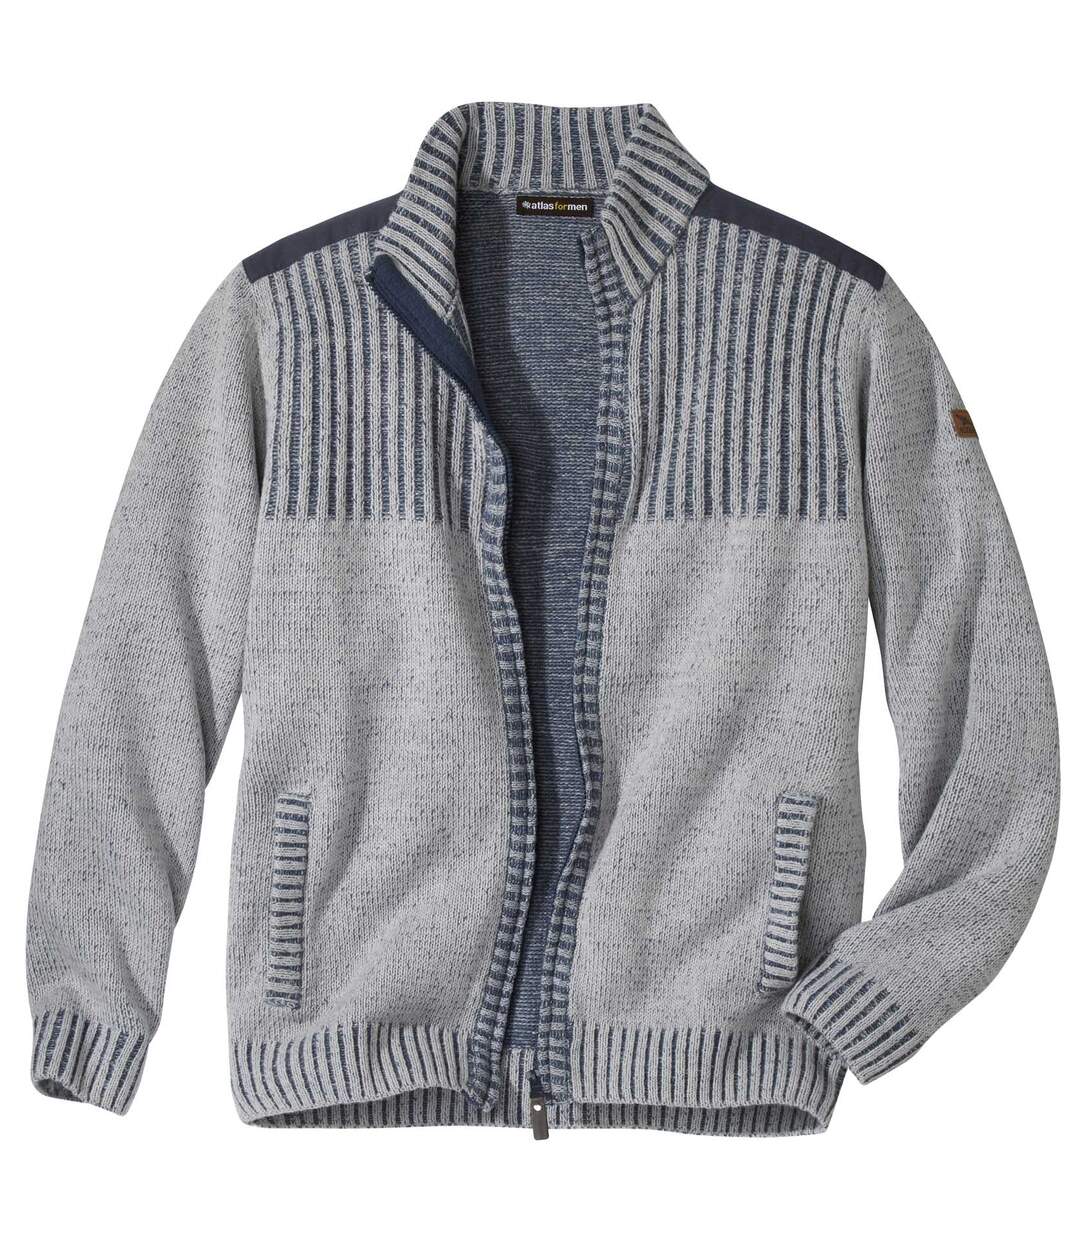 Men's Zip-Up Knitted Jacket - Mottled Blue and Gray Atlas For Men